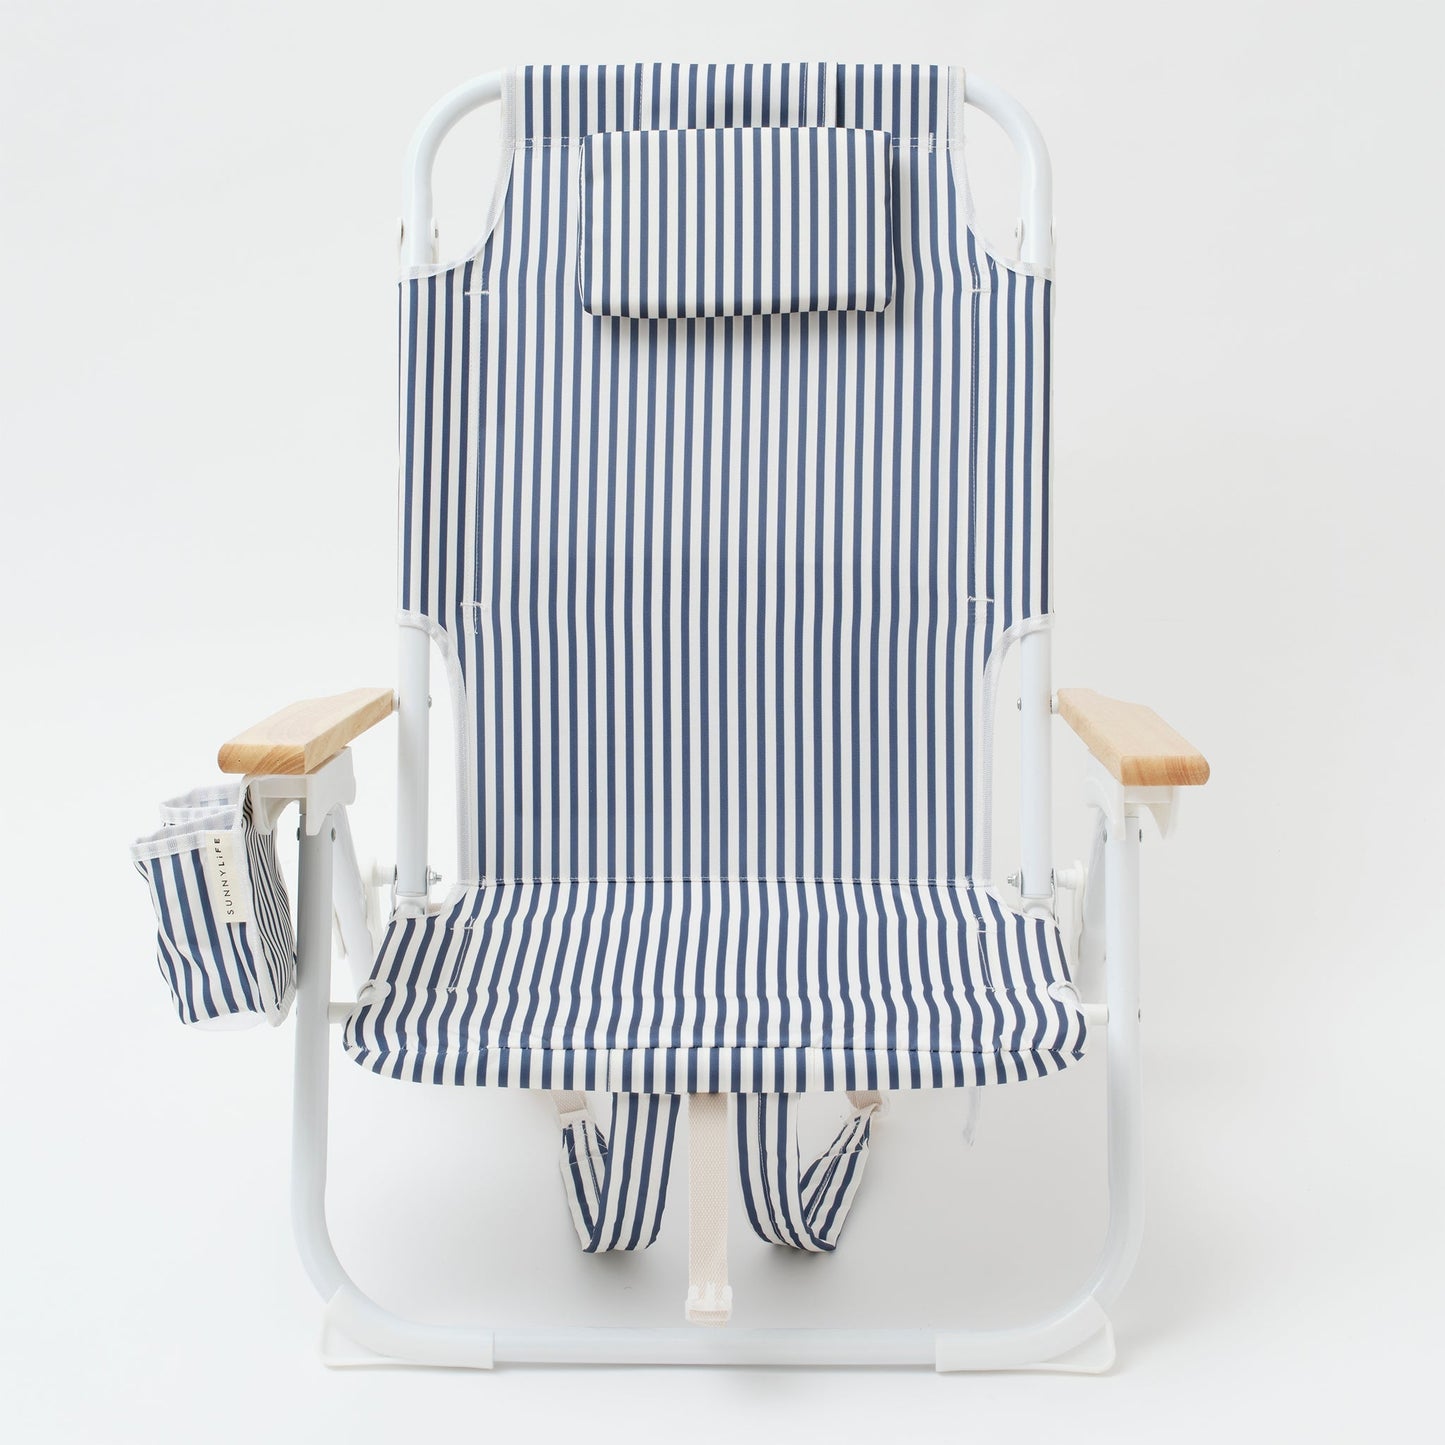 Deluxe Beach Chair - Coastal Blue